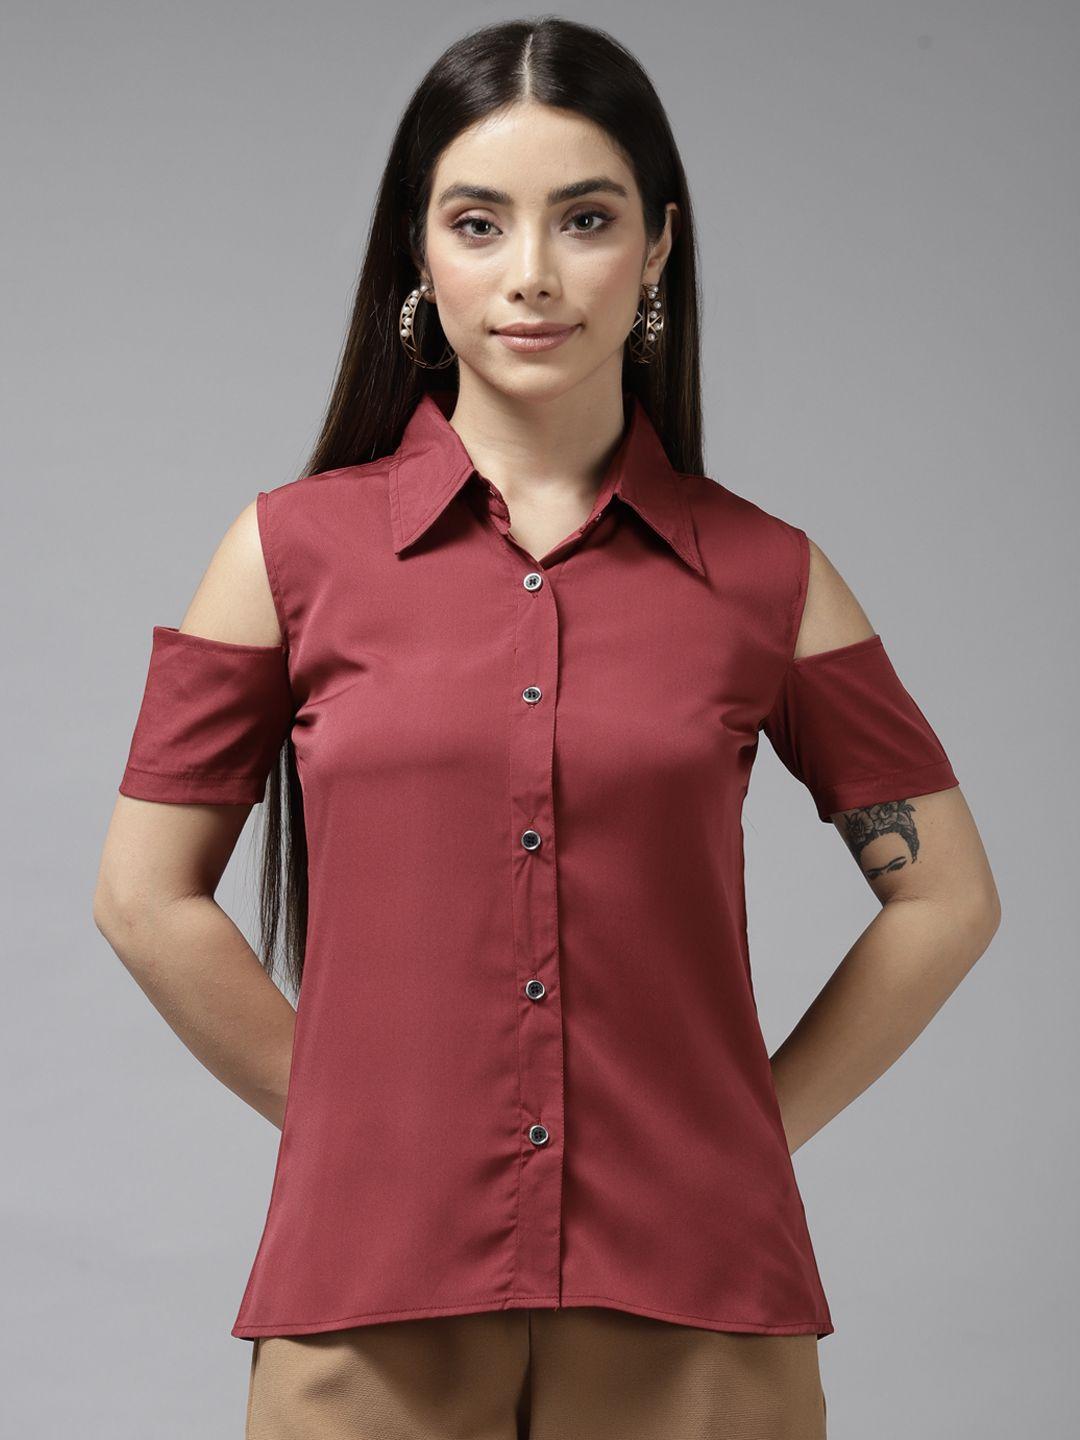 aarika maroon georgette shirt style top